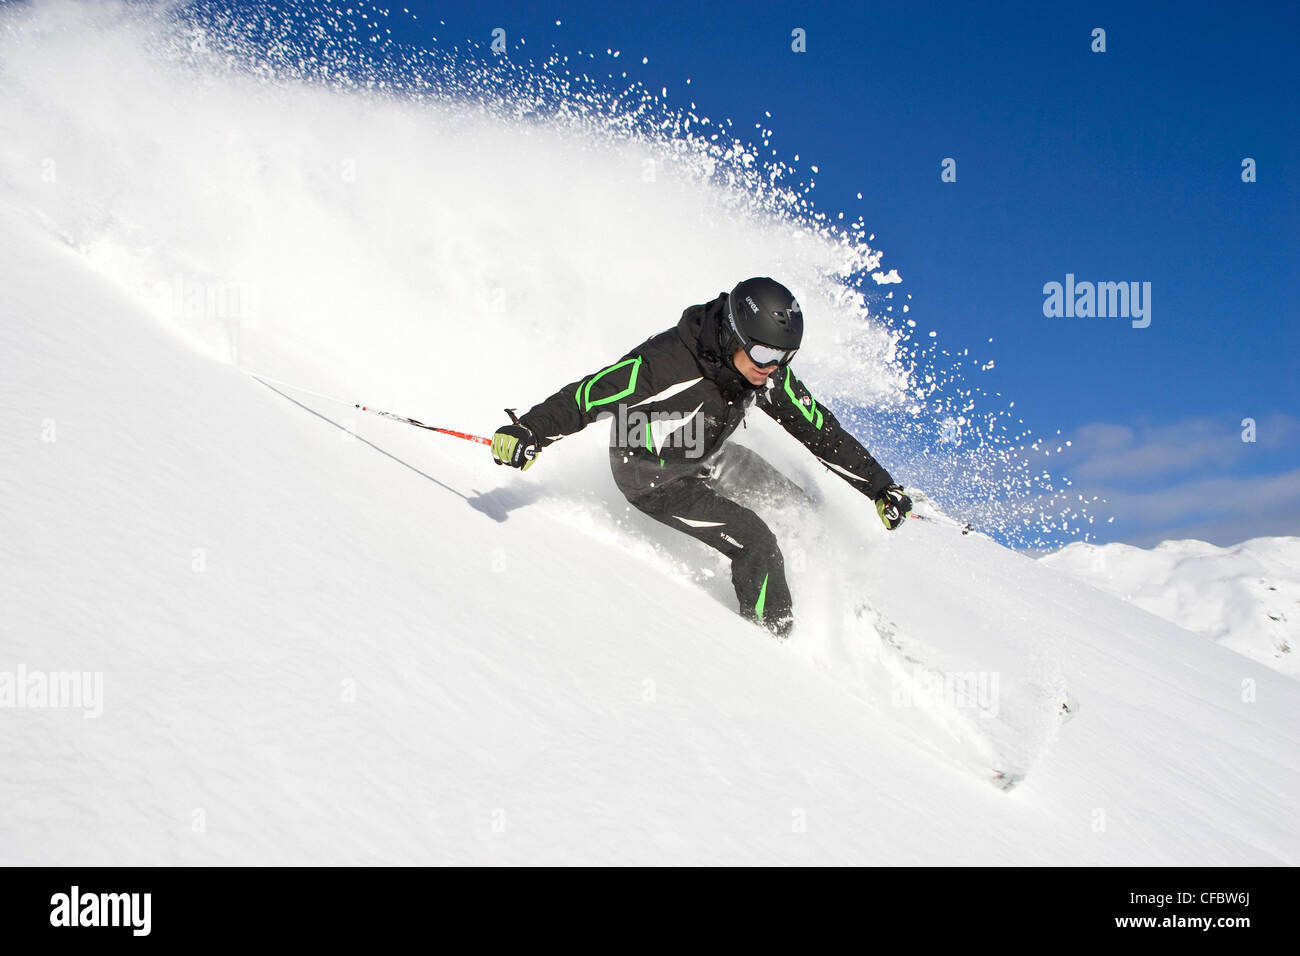 Freeriding, ski, skiing, Freeskiing, powder snow, Freeriding, man, skiing, powder snow slope, blue, sky, Alpine, powder snow, ri Stock Photo